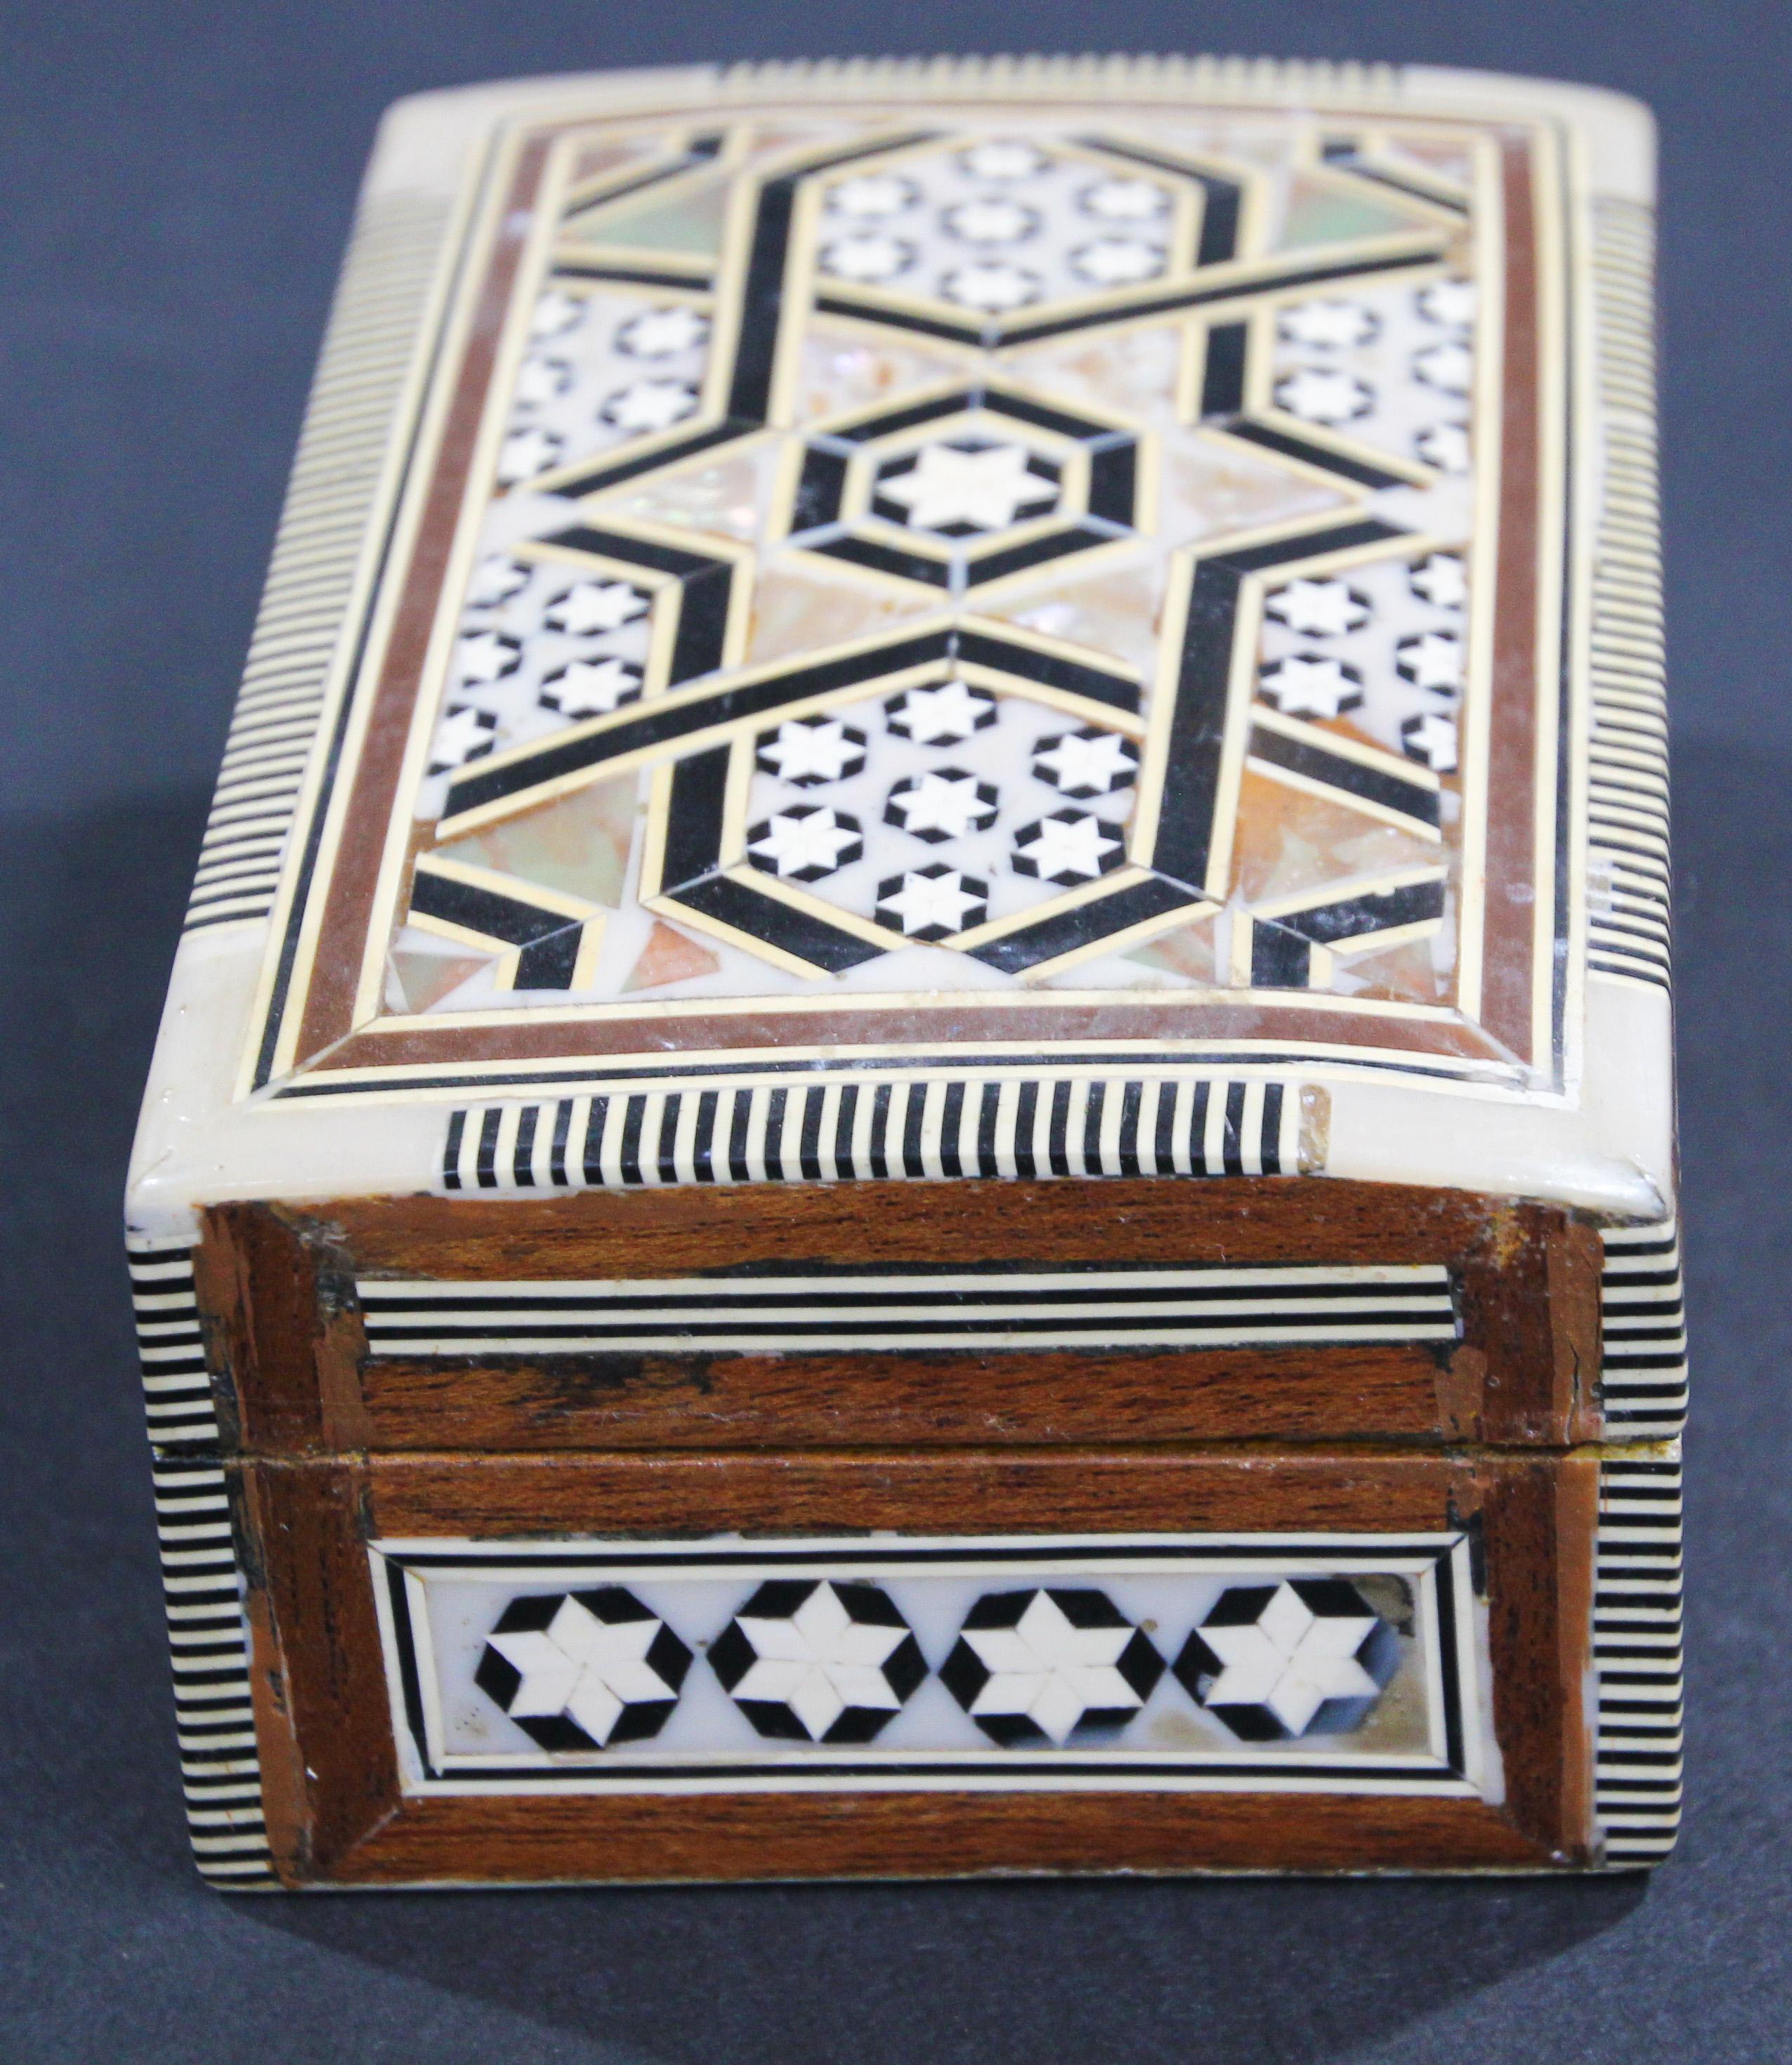 Handgefertigte Mosaik-Dekobox aus dem maurischen Nahen Osten, Mosaik (Muschel) im Angebot